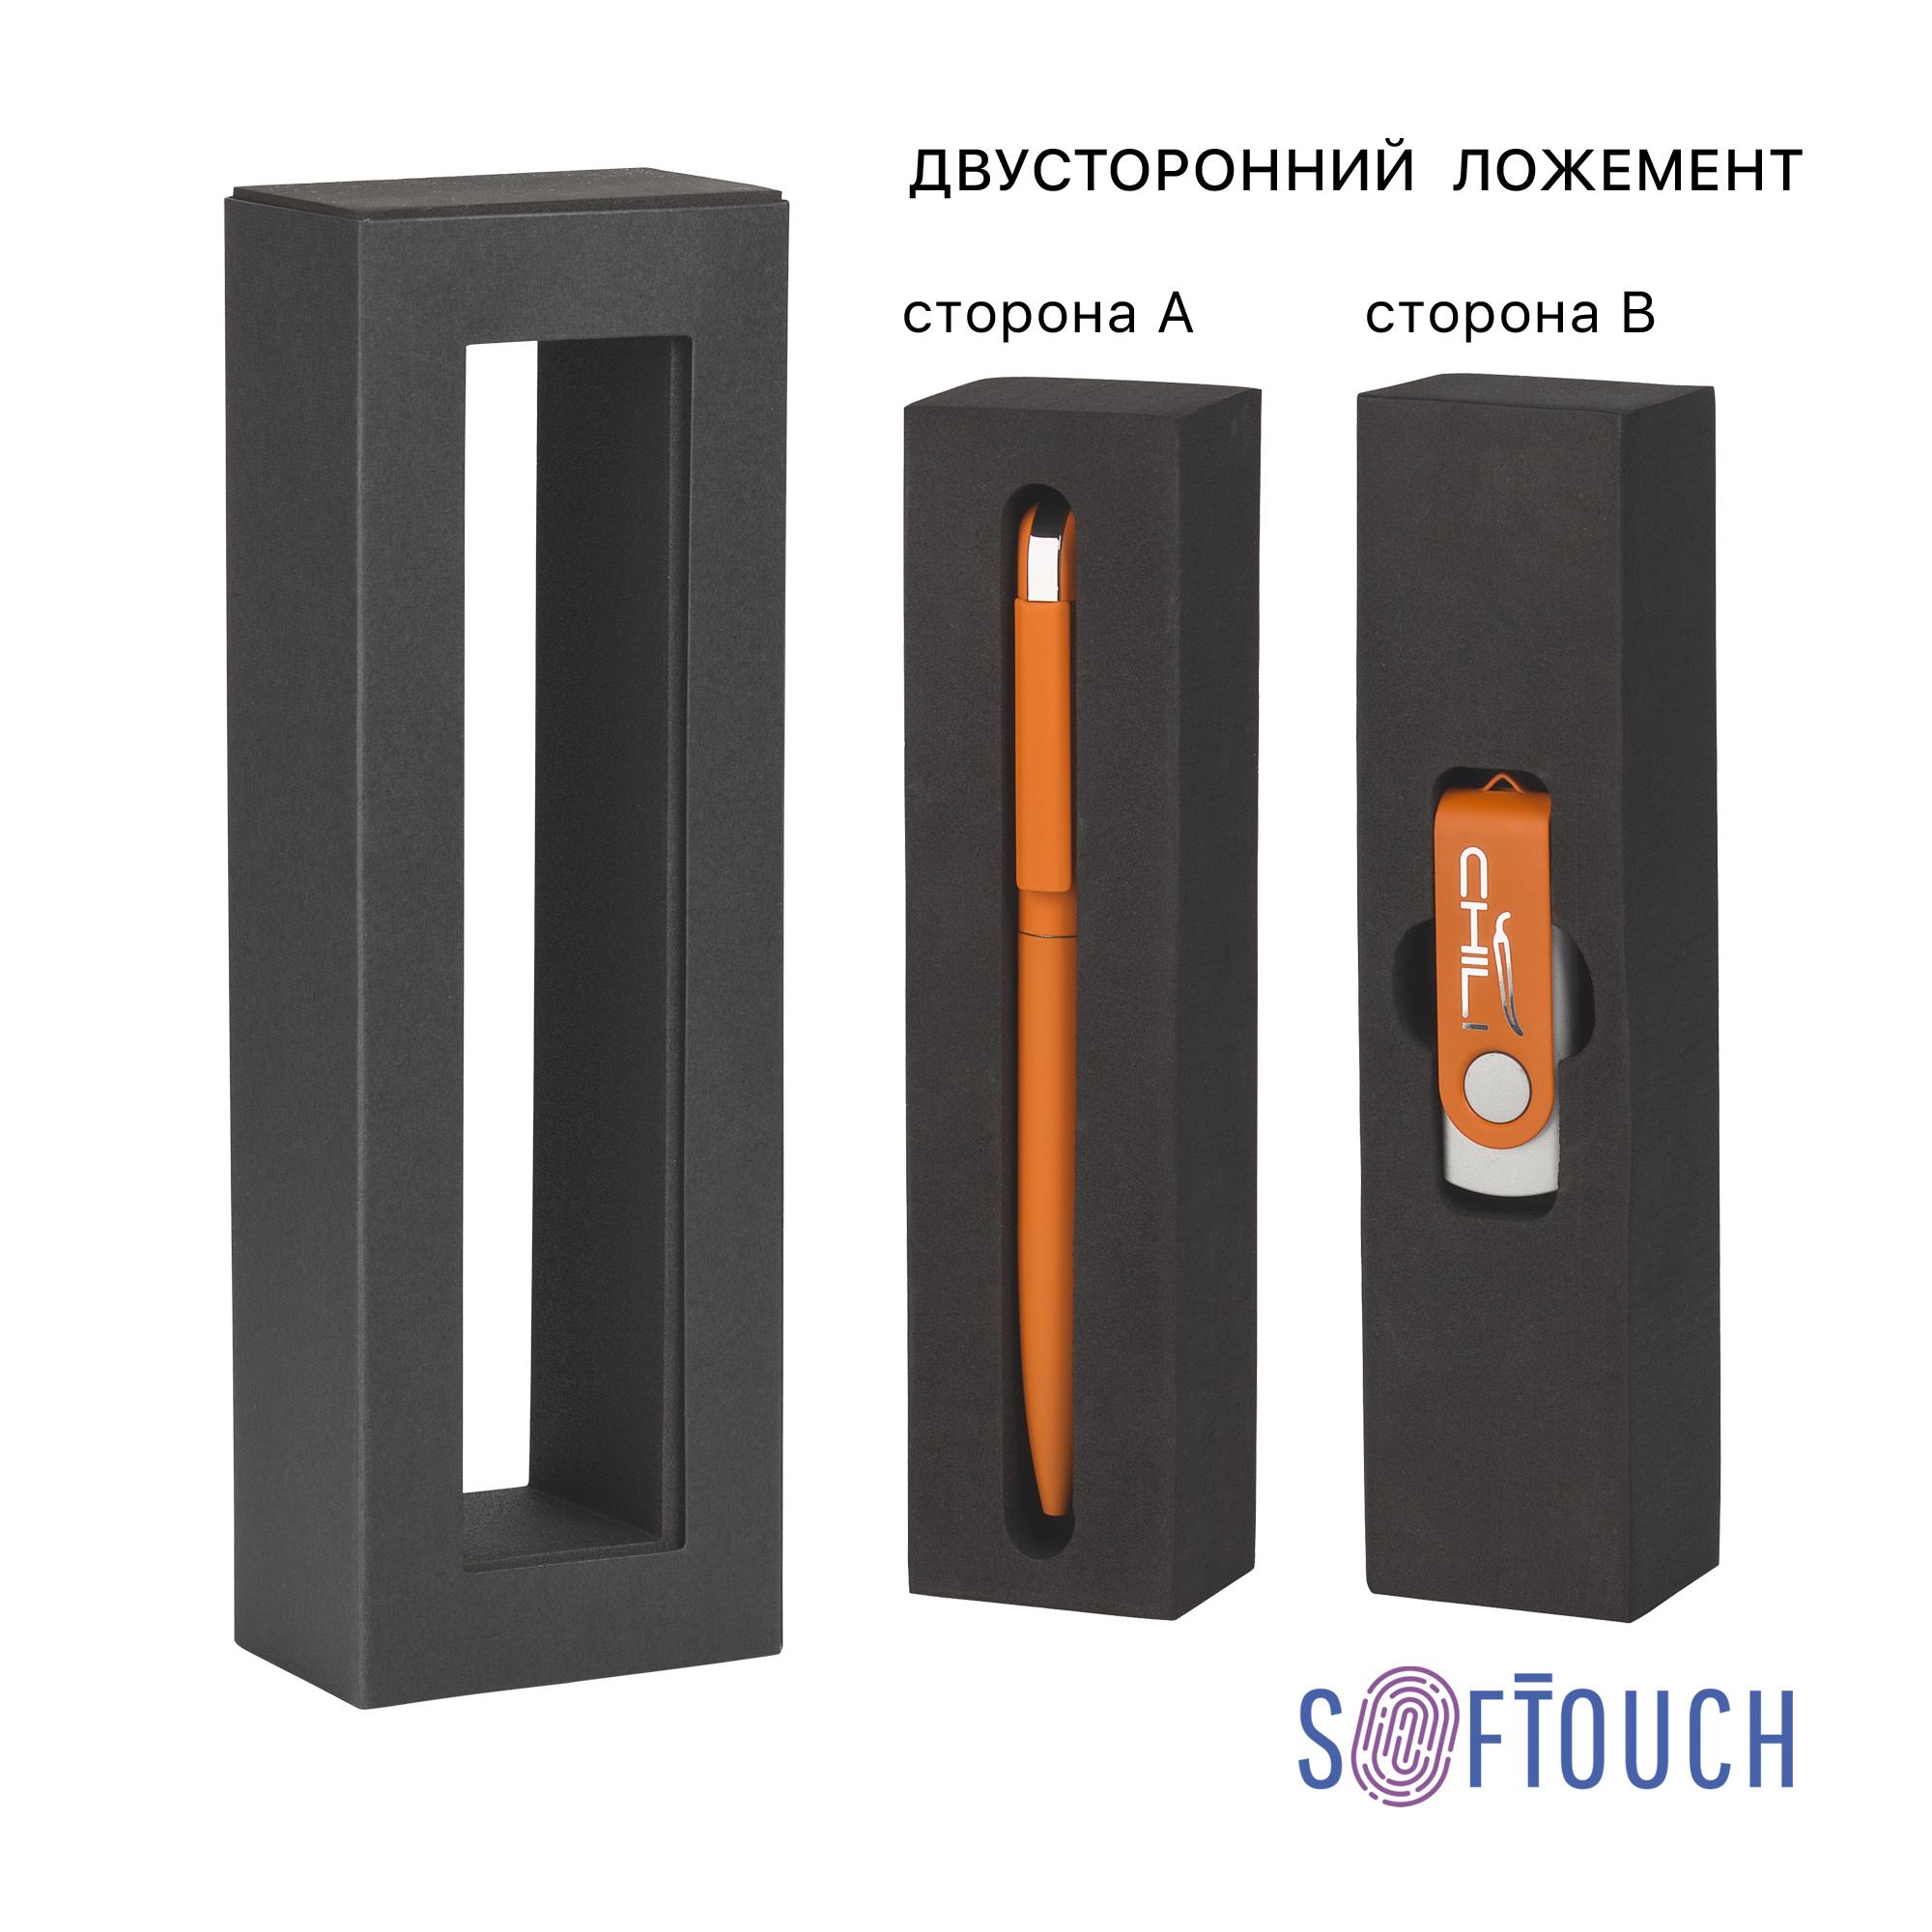 Набор ручка "Jupiter" + флеш-карта "Vostok" 16 Гб в футляре, покрытие soft touch, цвет оранжевый, фото 3